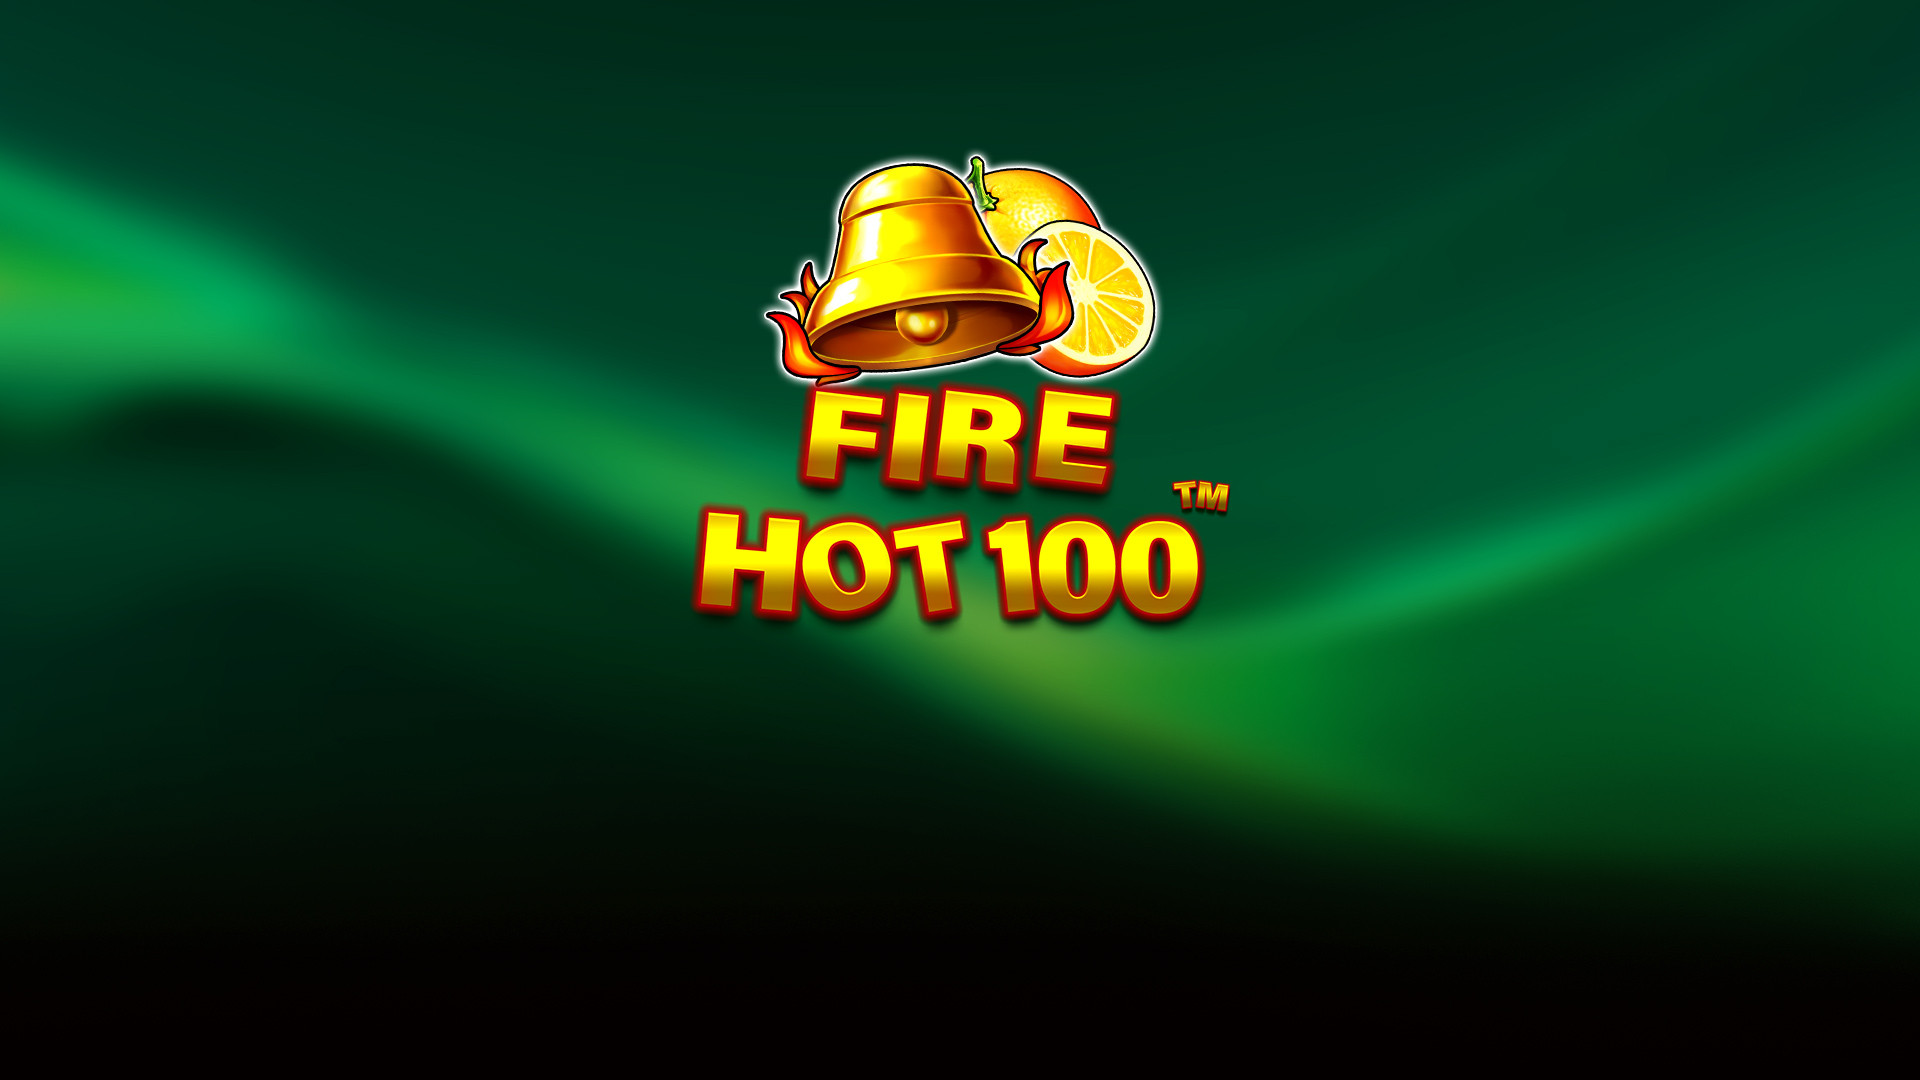 Fire Hot Series - Fire Hot 100